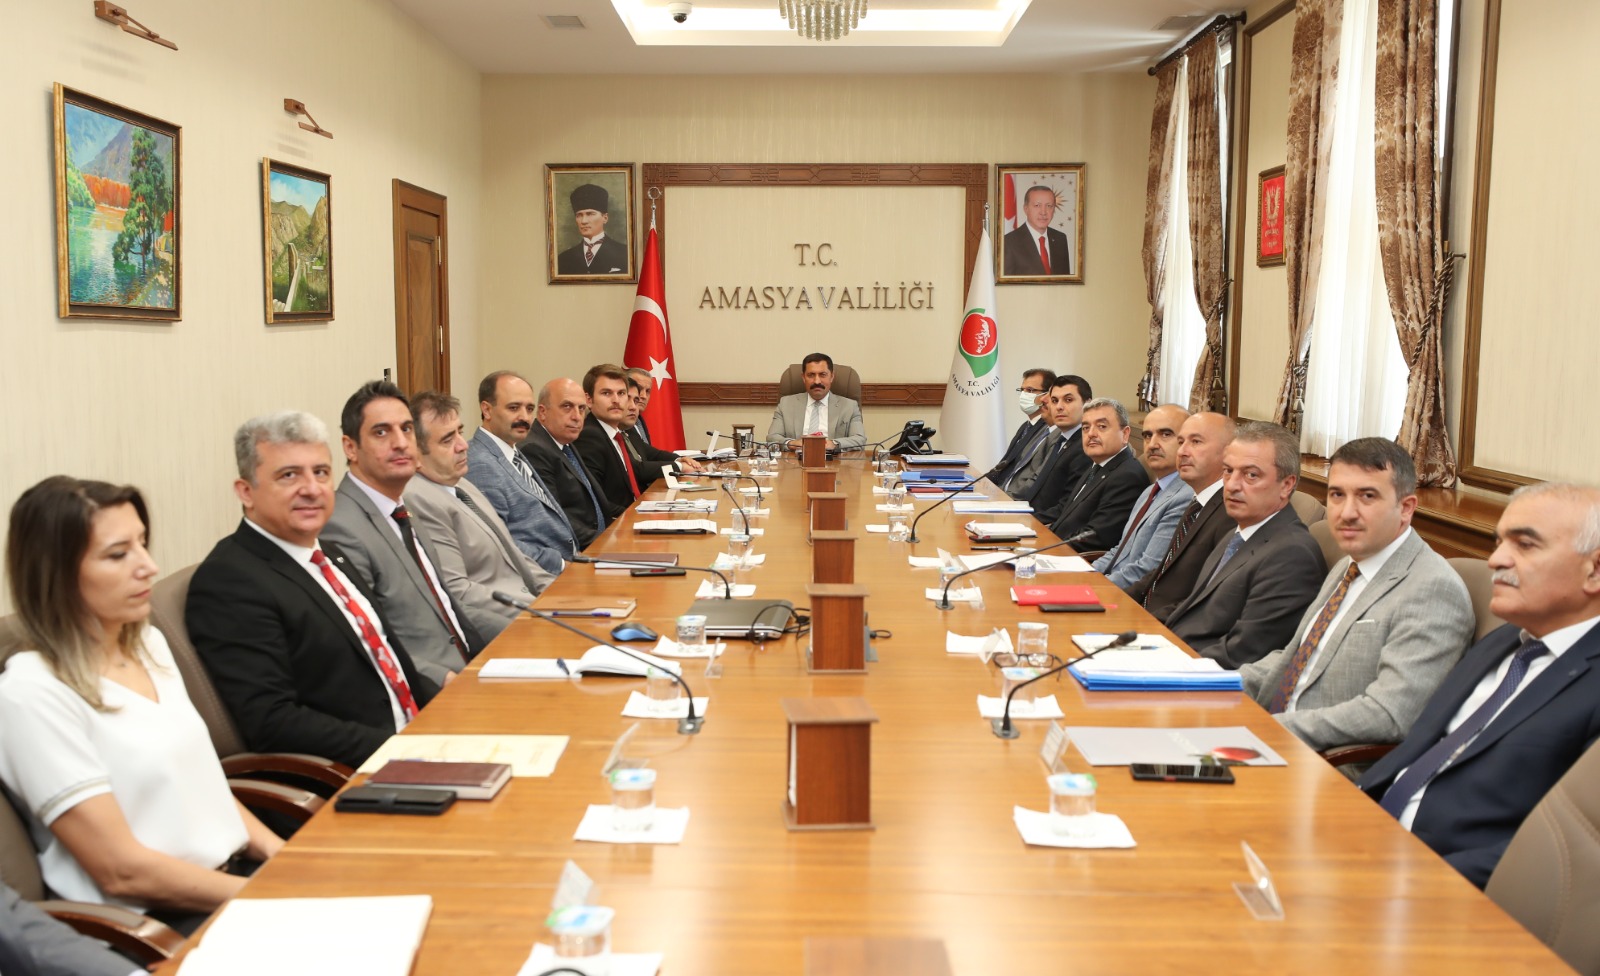 Amasya Valisi Mustafa MASATLI, Amasya İlindeki Kamu Hizmetleri ile Yatırımların Değerlendirildiği Toplantıya Başkanlık Etti